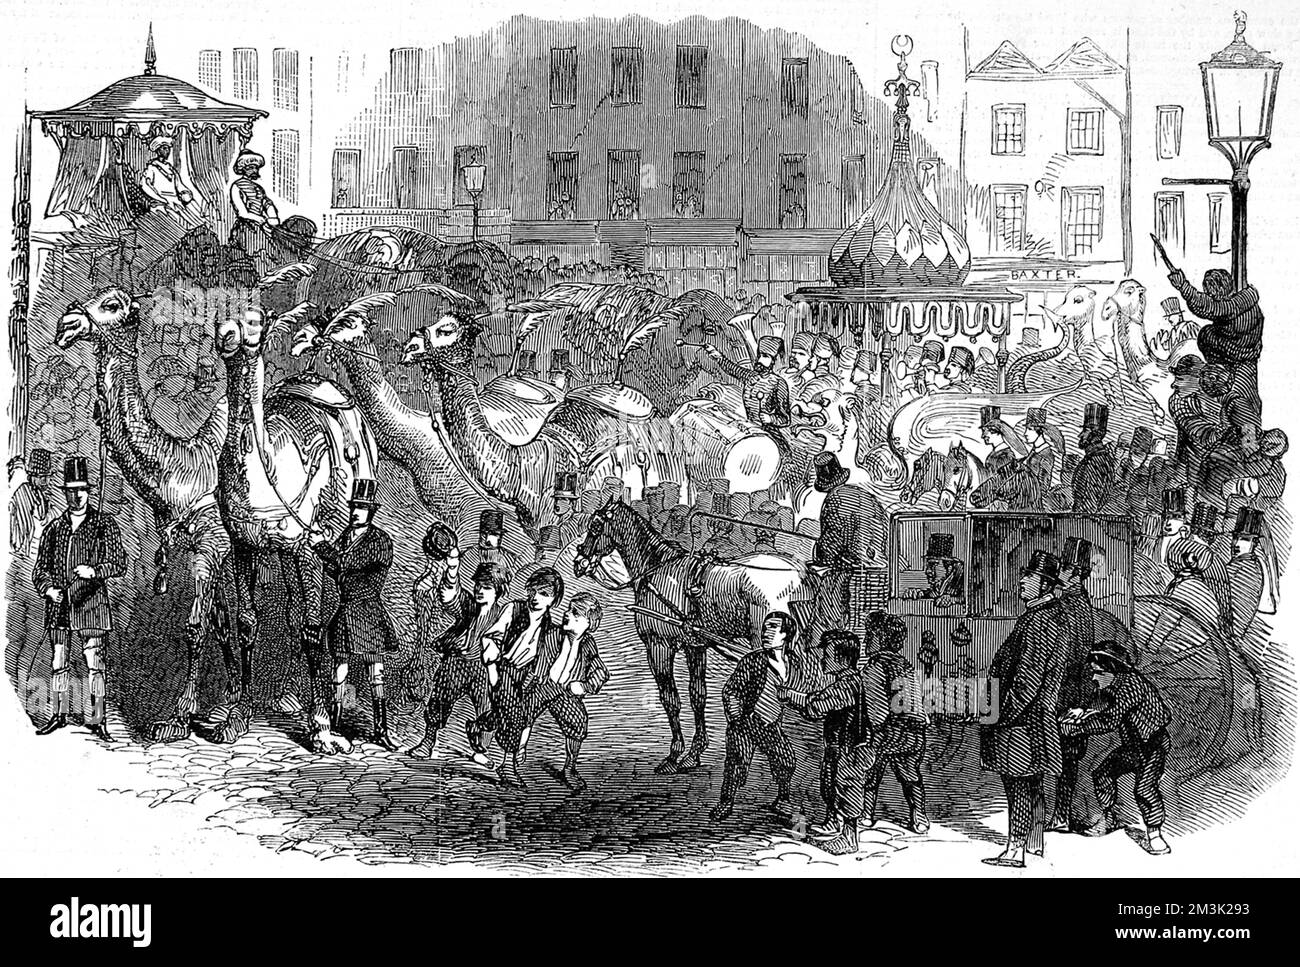 Hughes' 'Mammoth troupe' se déplaçant dans les rues de Londres en route vers le théâtre Drury Lane, mars 1847. De grandes foules de Londoniens se sont rassemblées pour observer les chameaux, les éléphants et les chevaux se promener dans la ville. Date: 1847 Banque D'Images